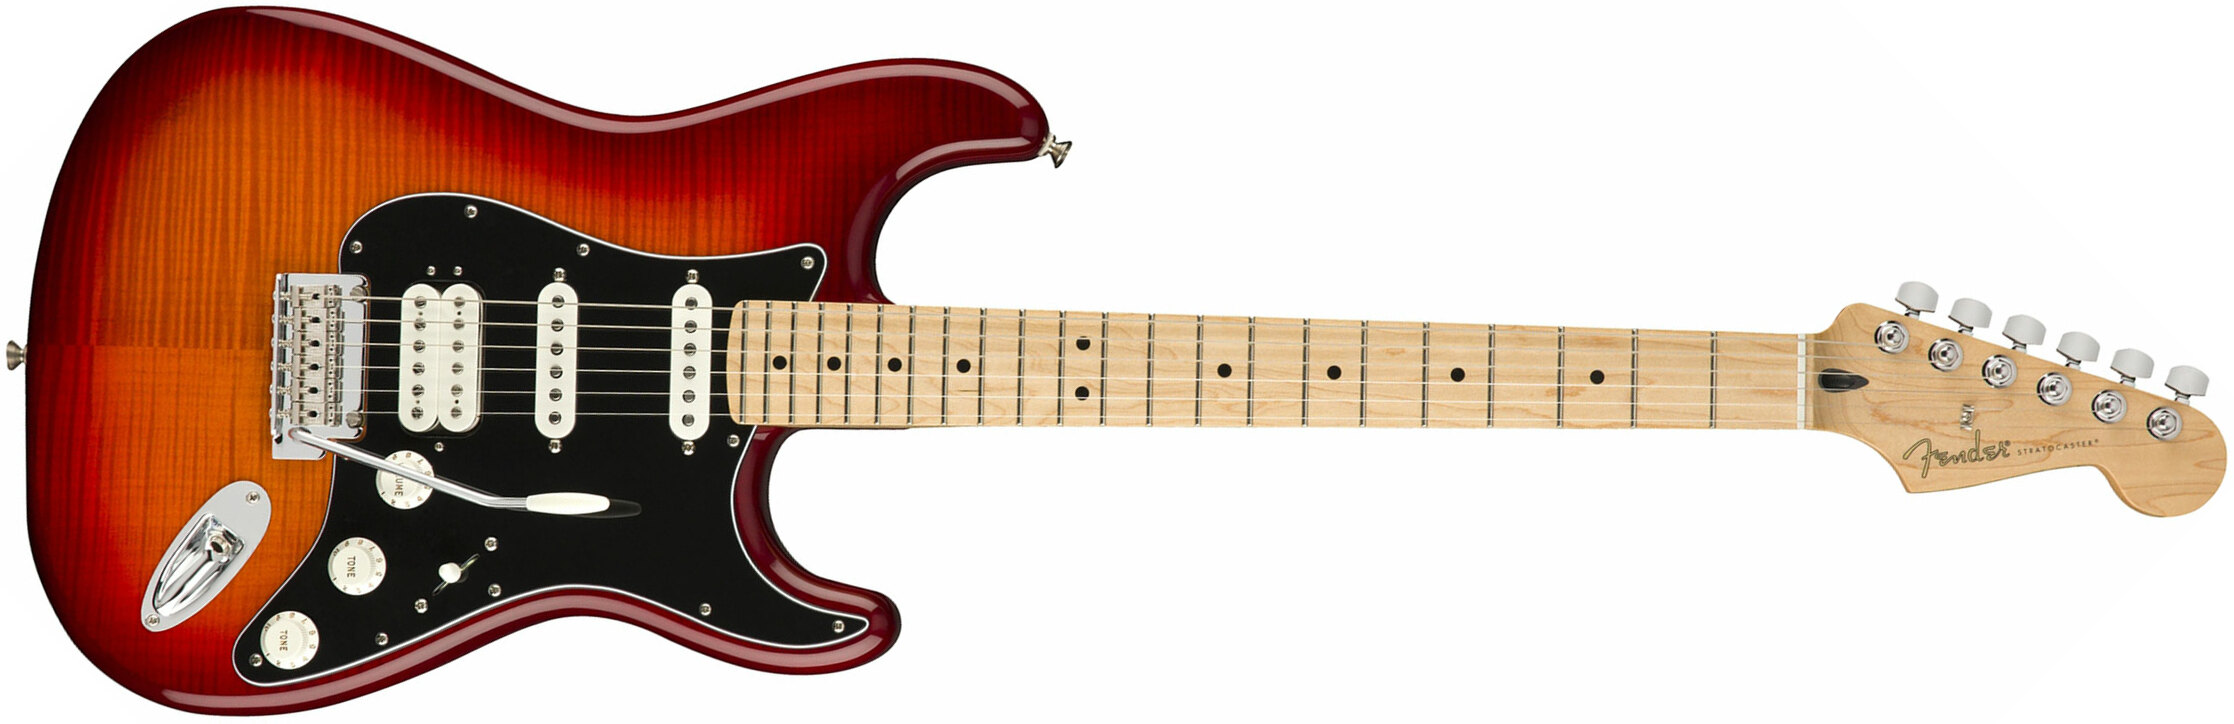 Fender Strat Player Plus Top Mex Hss Mn - Aged Cherry Burst - Elektrische gitaar in Str-vorm - Main picture